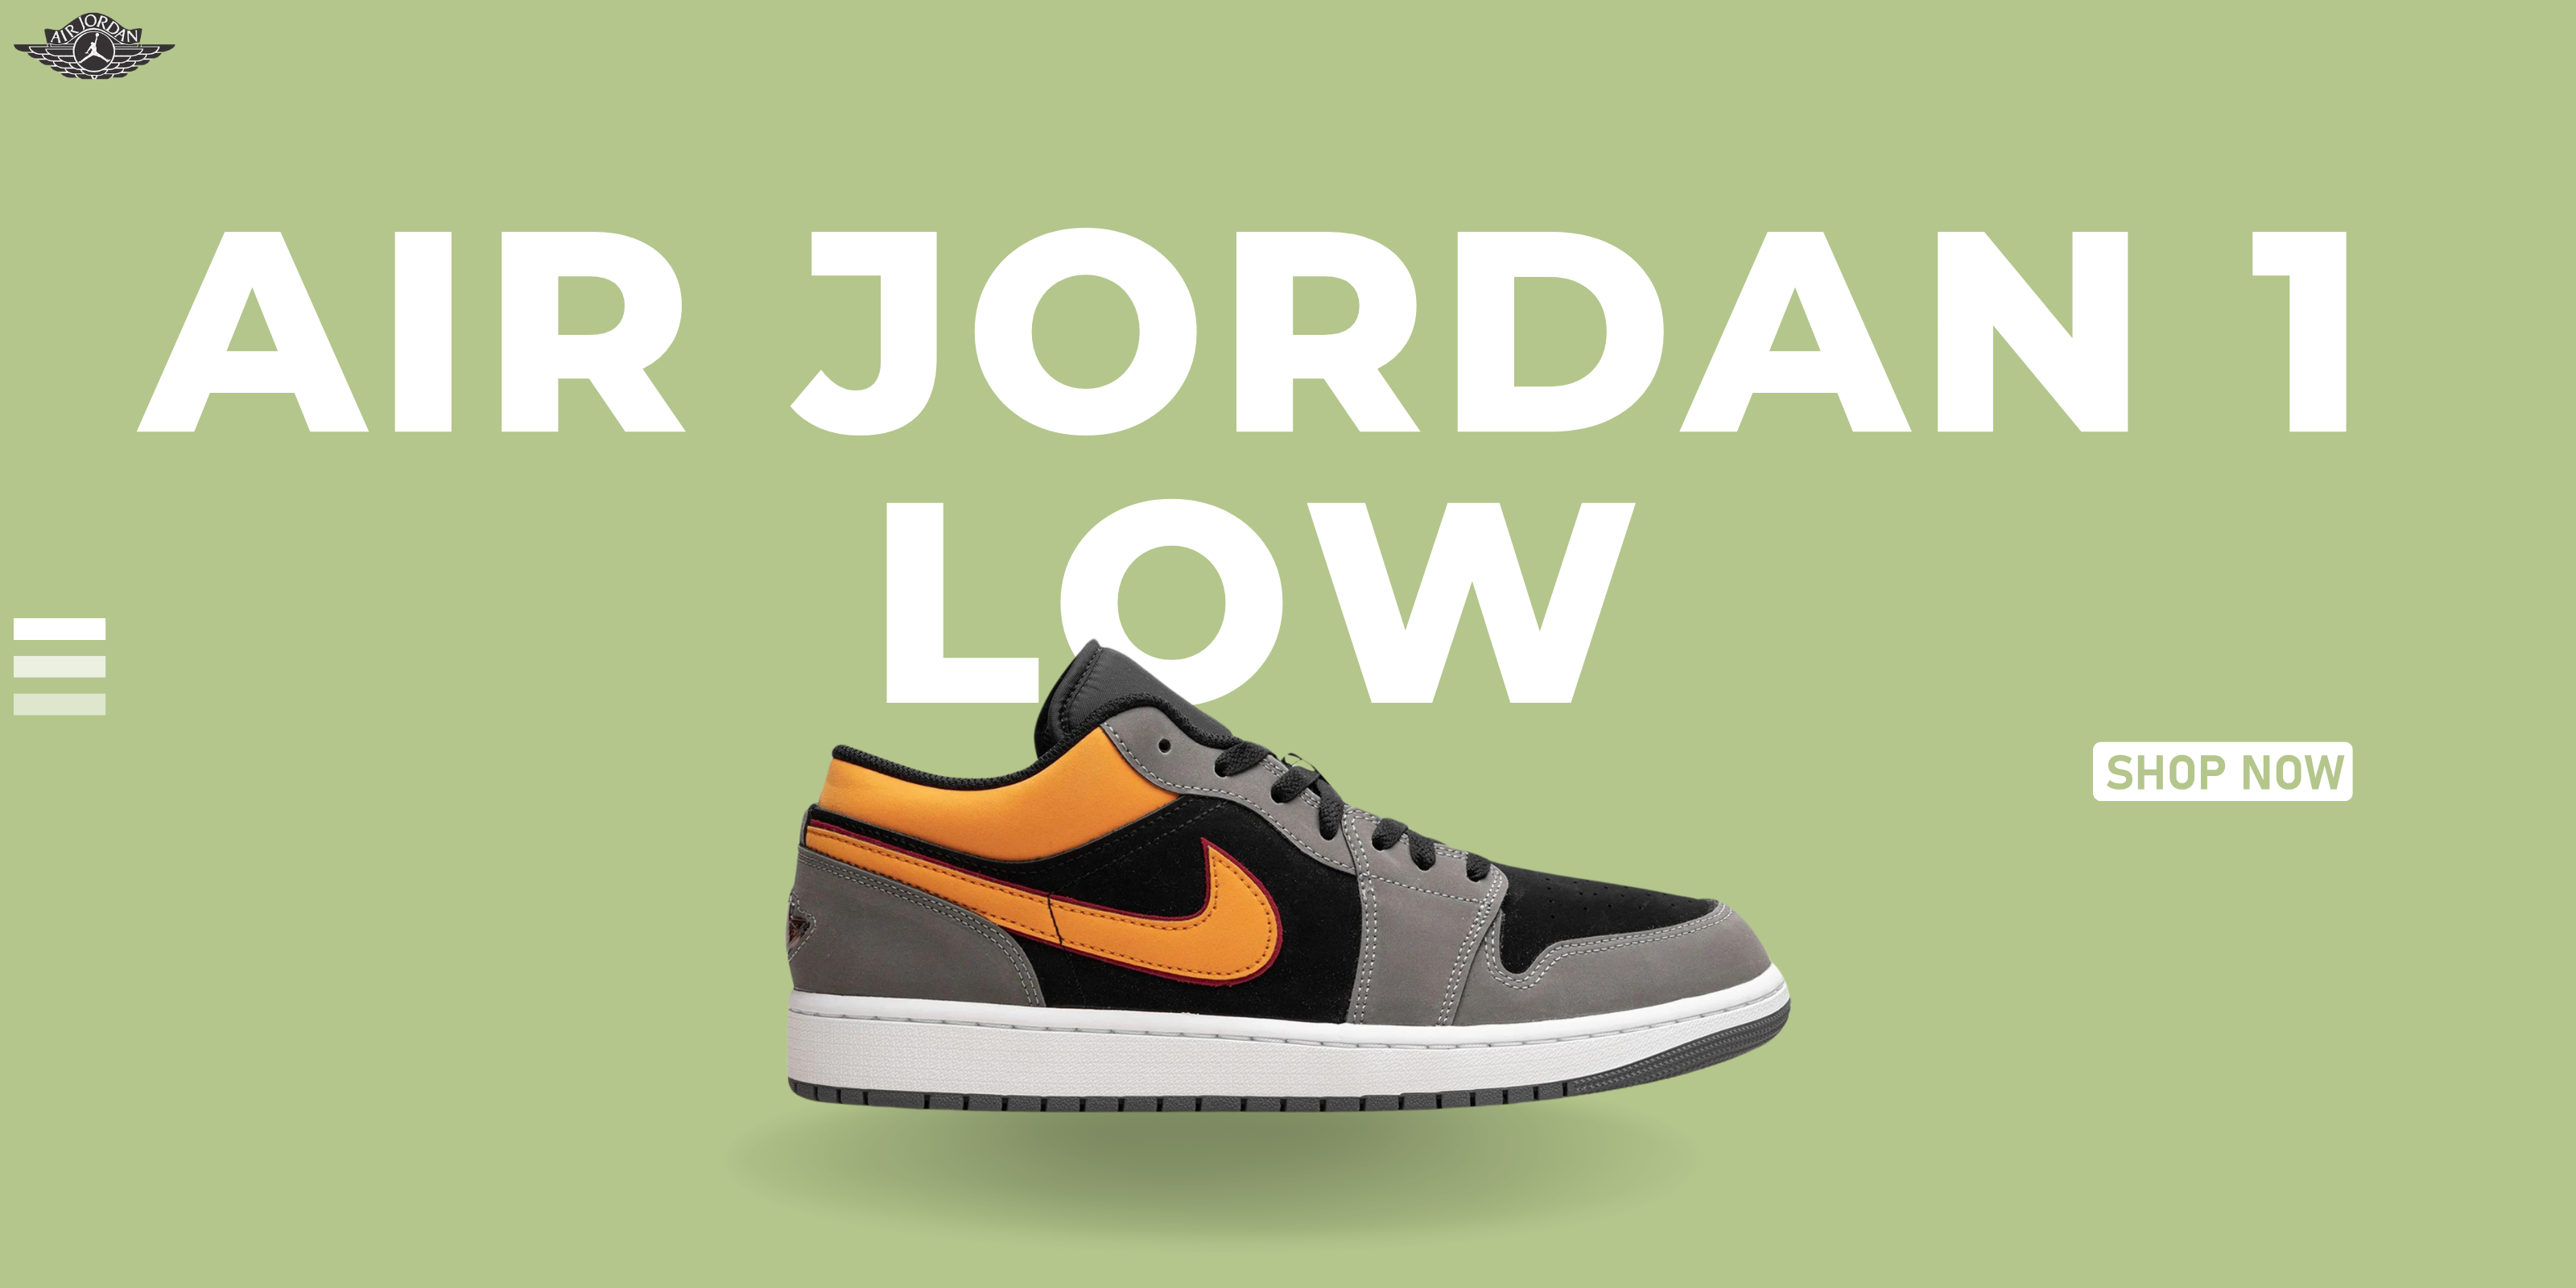 Jordan Lows